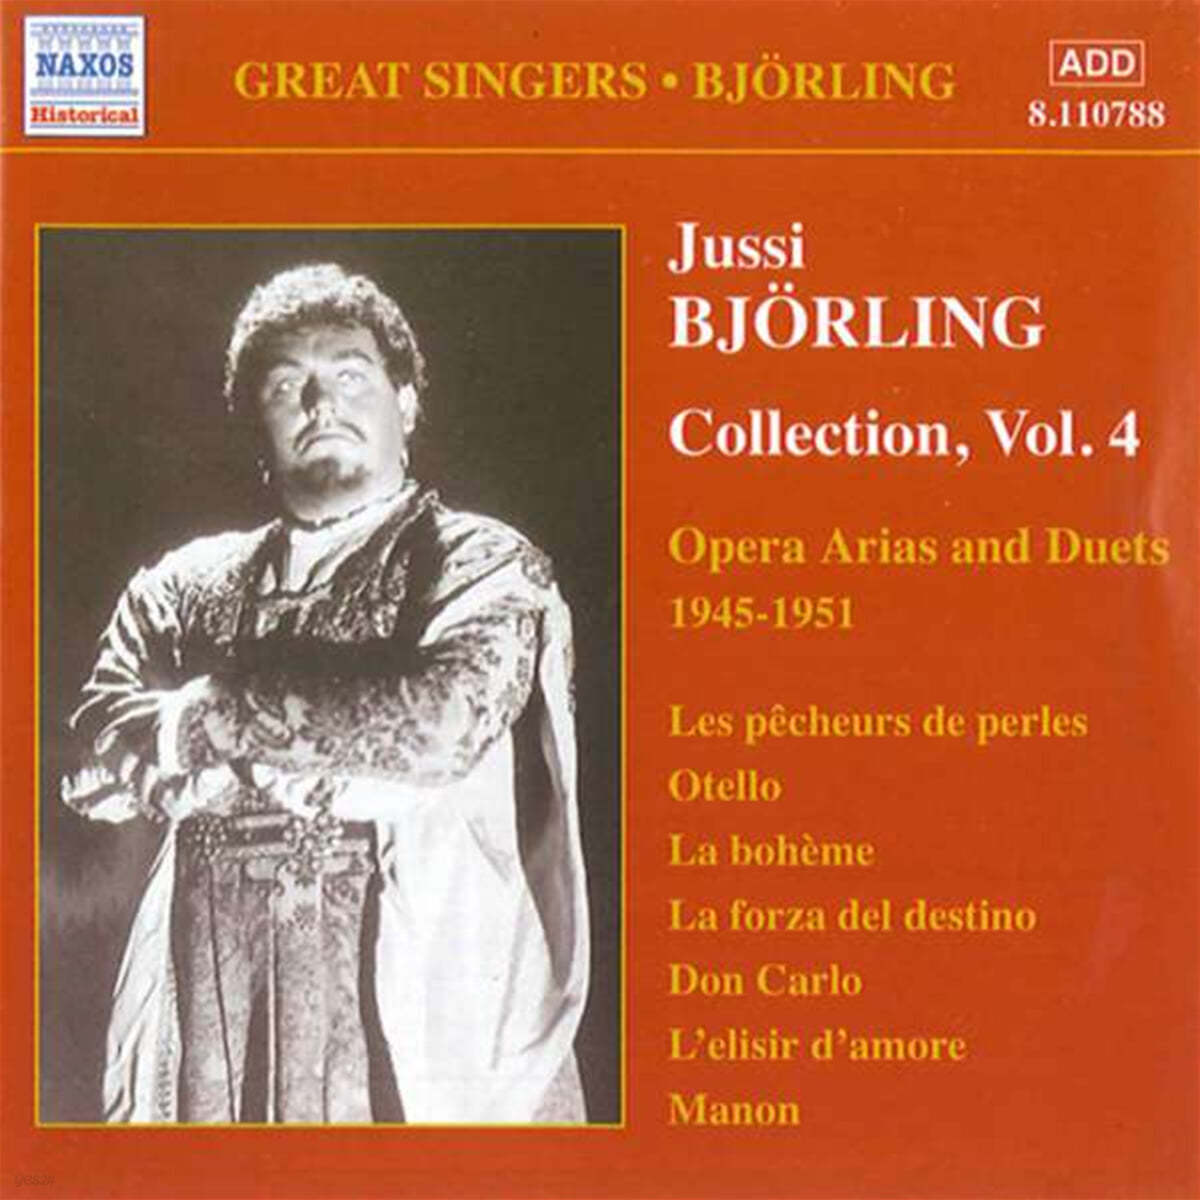 유시 비욜링 - 콜렉션 4집 : 오페라 아리아와 듀엣 (Jussi Bjorling - Collection Vol. 4, Opera Arias and Duets) 